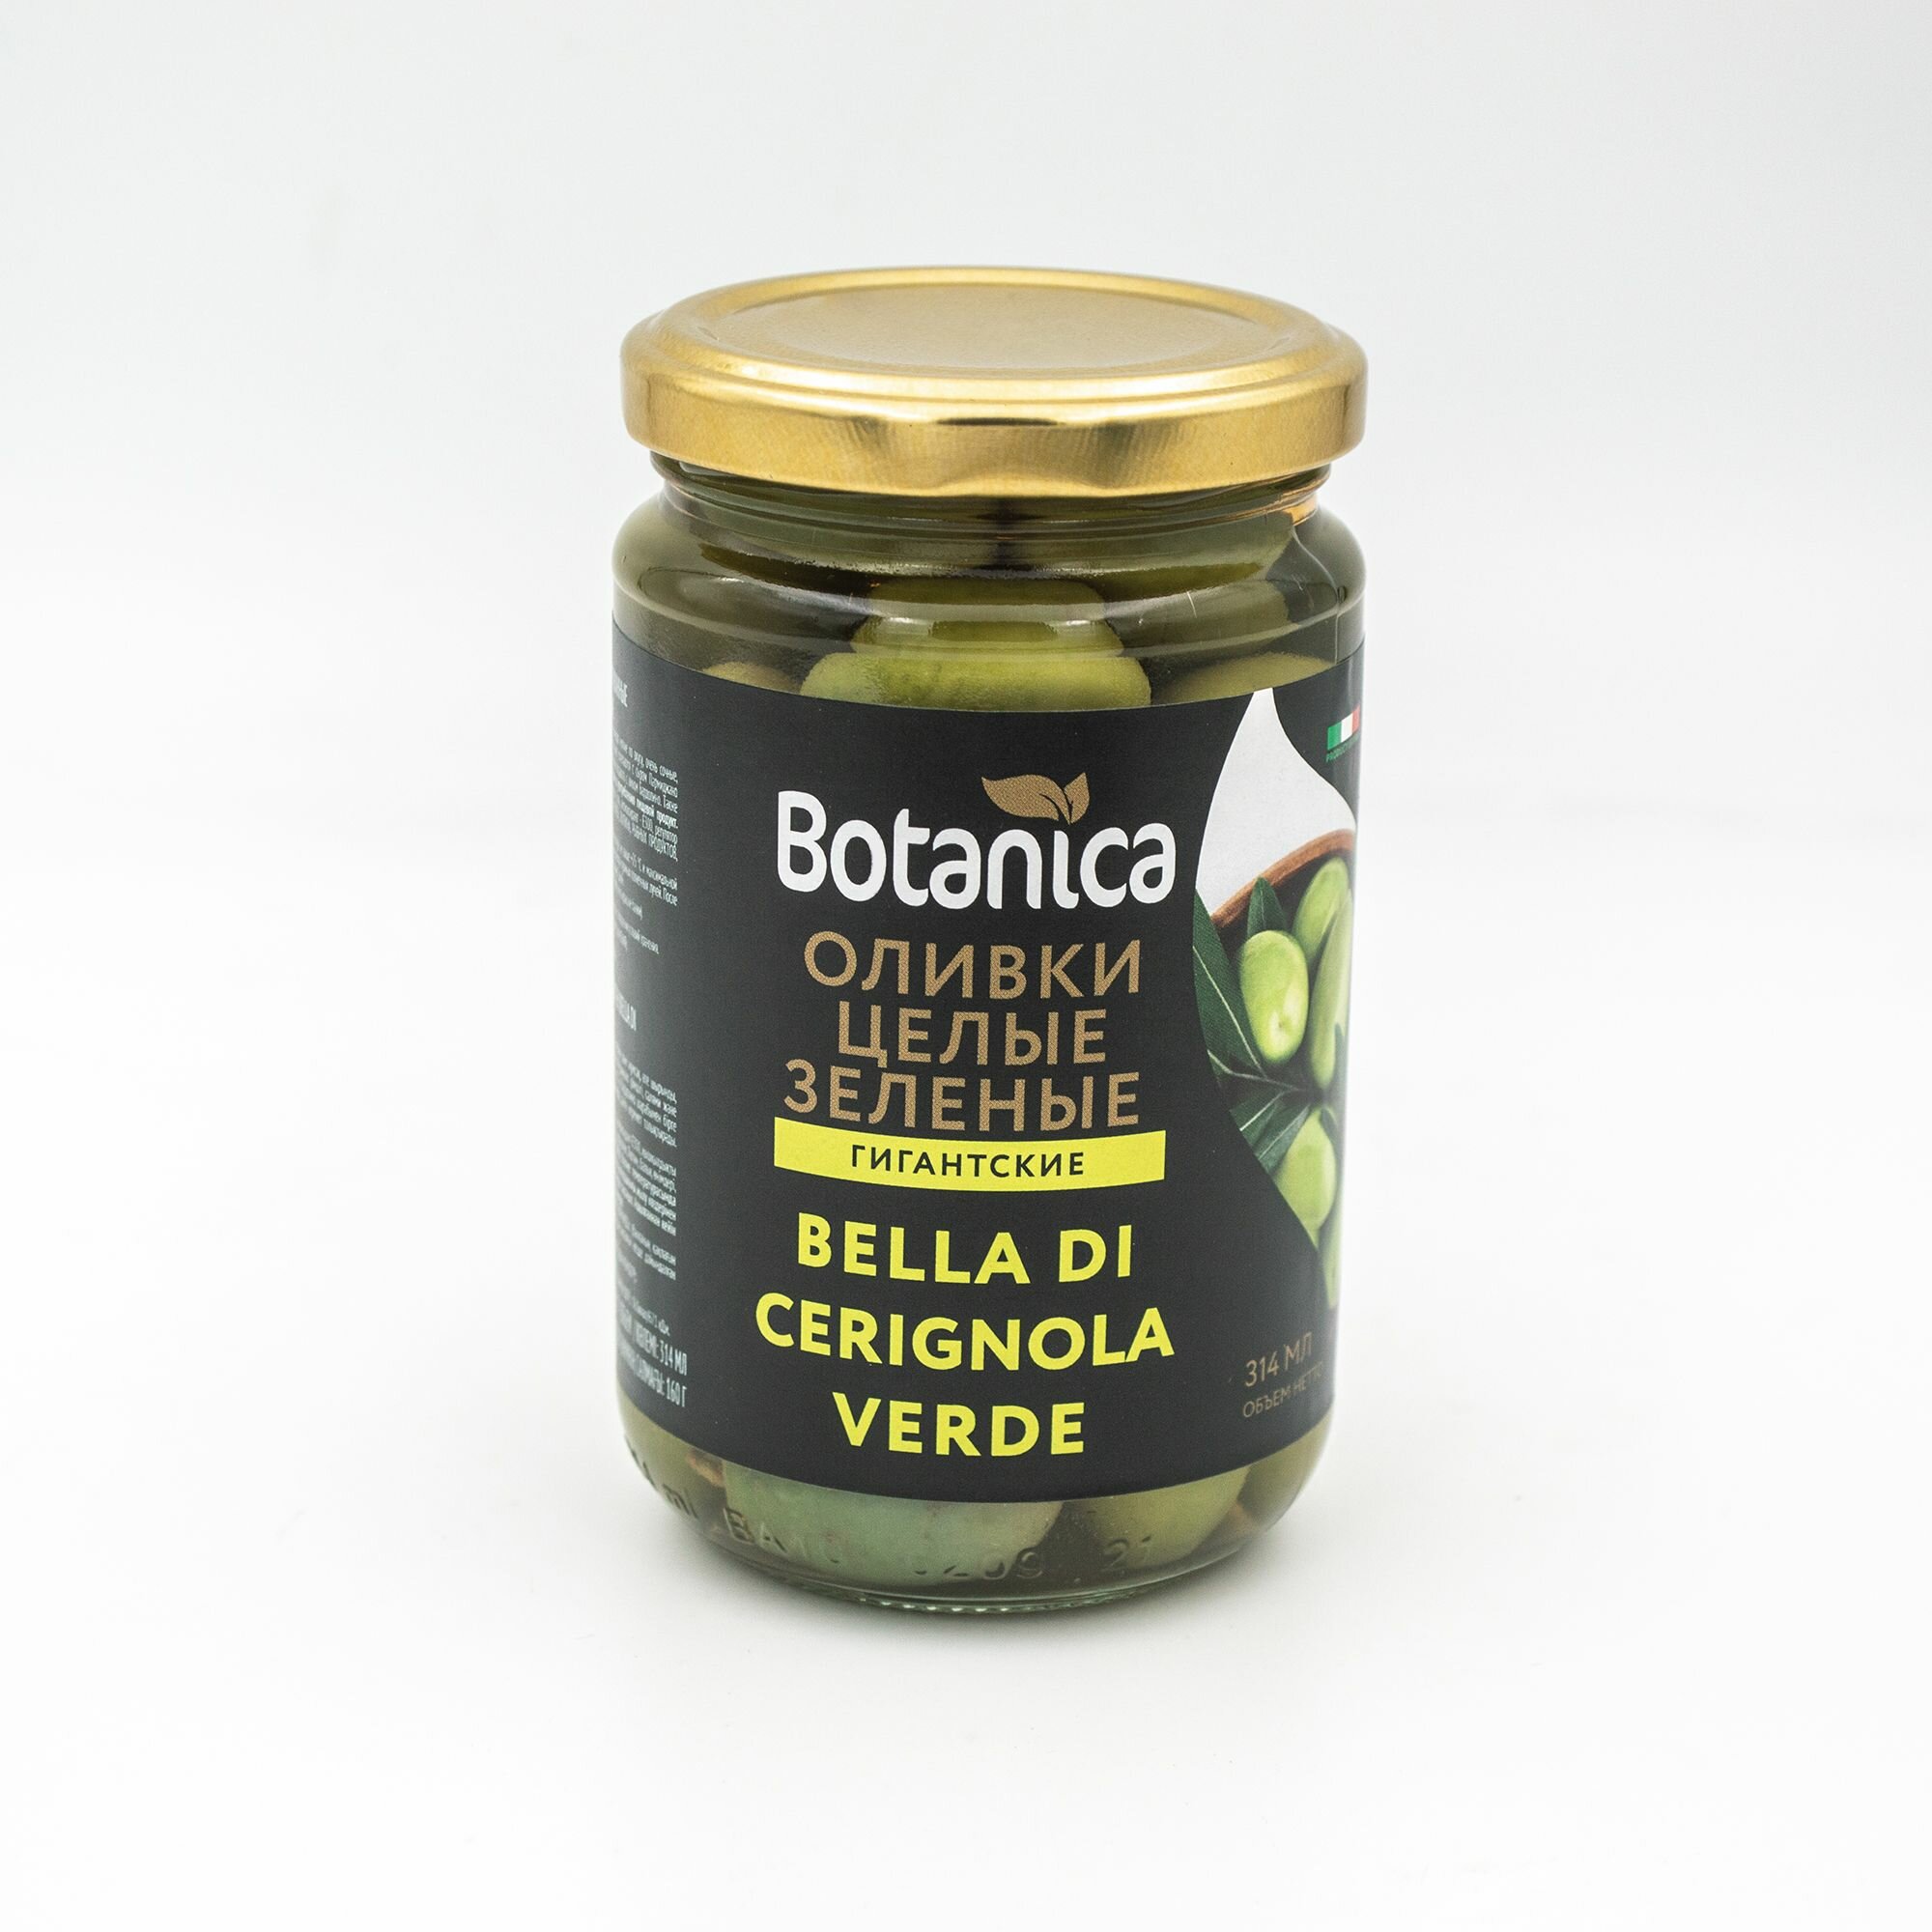 Оливки целые гигантские Bella di Cerignola зеленые Botanica, 314мл